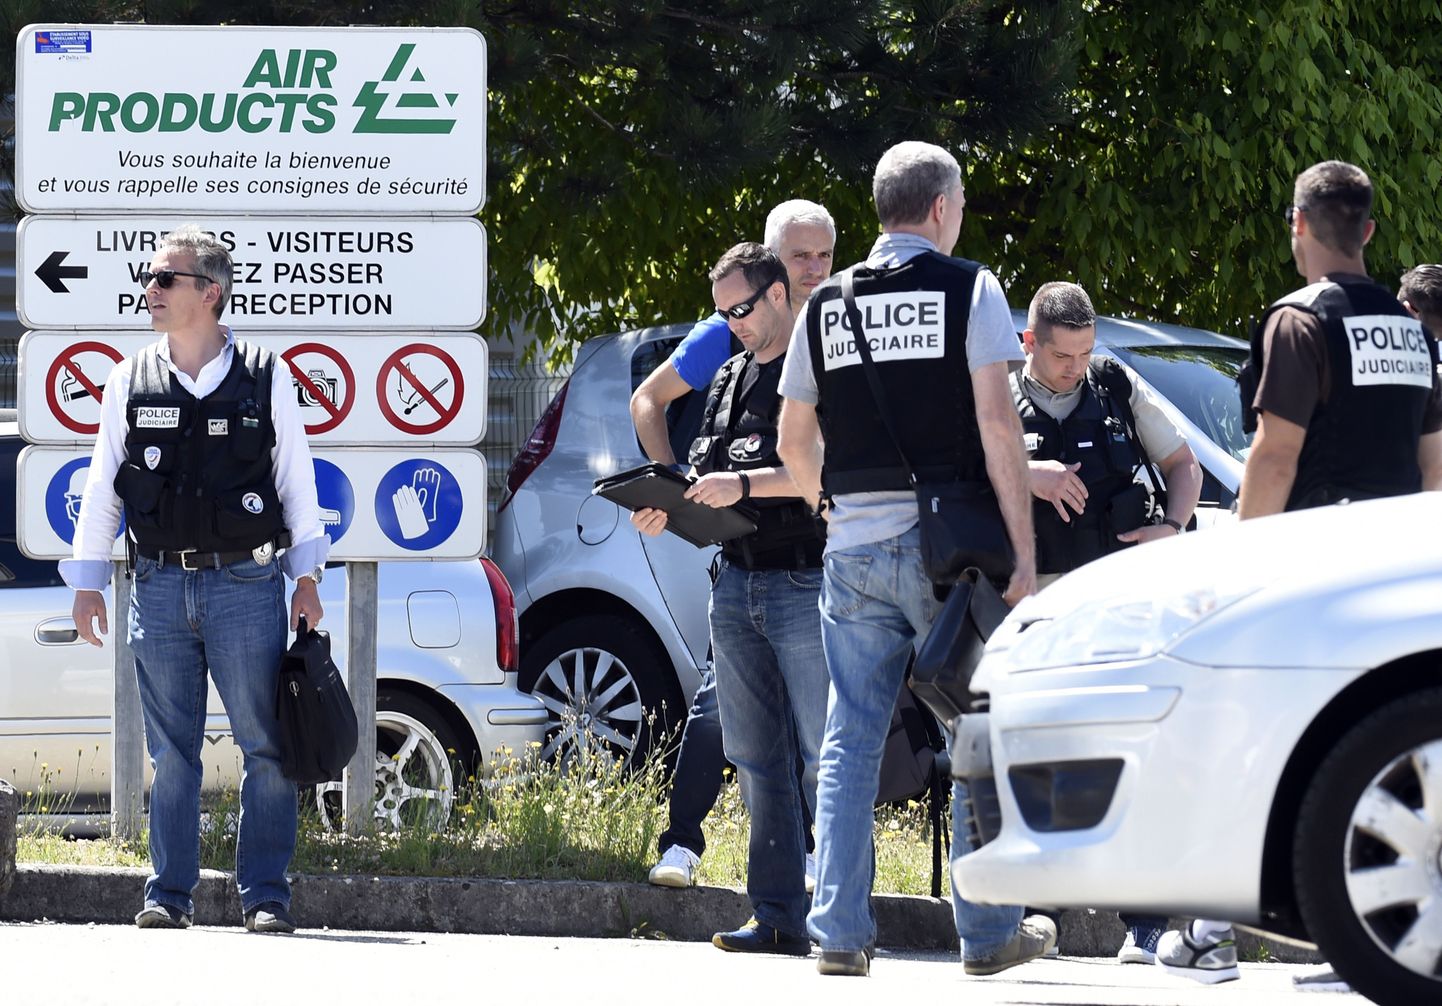 Prantsuse politsei täna tehase ees, kus toimus arvatav islamistirünnak.